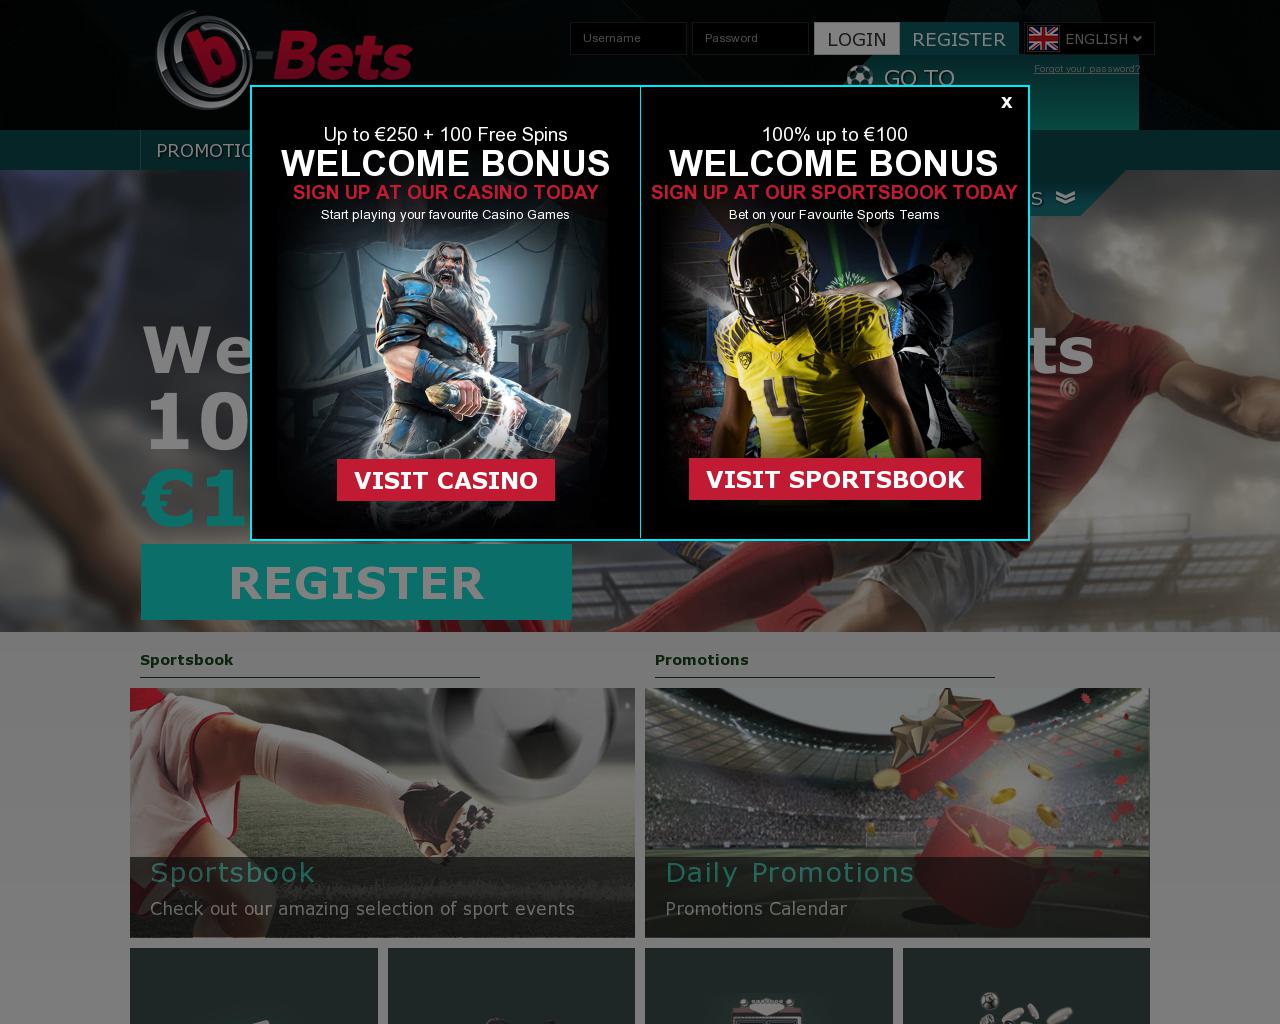 b-bets.com